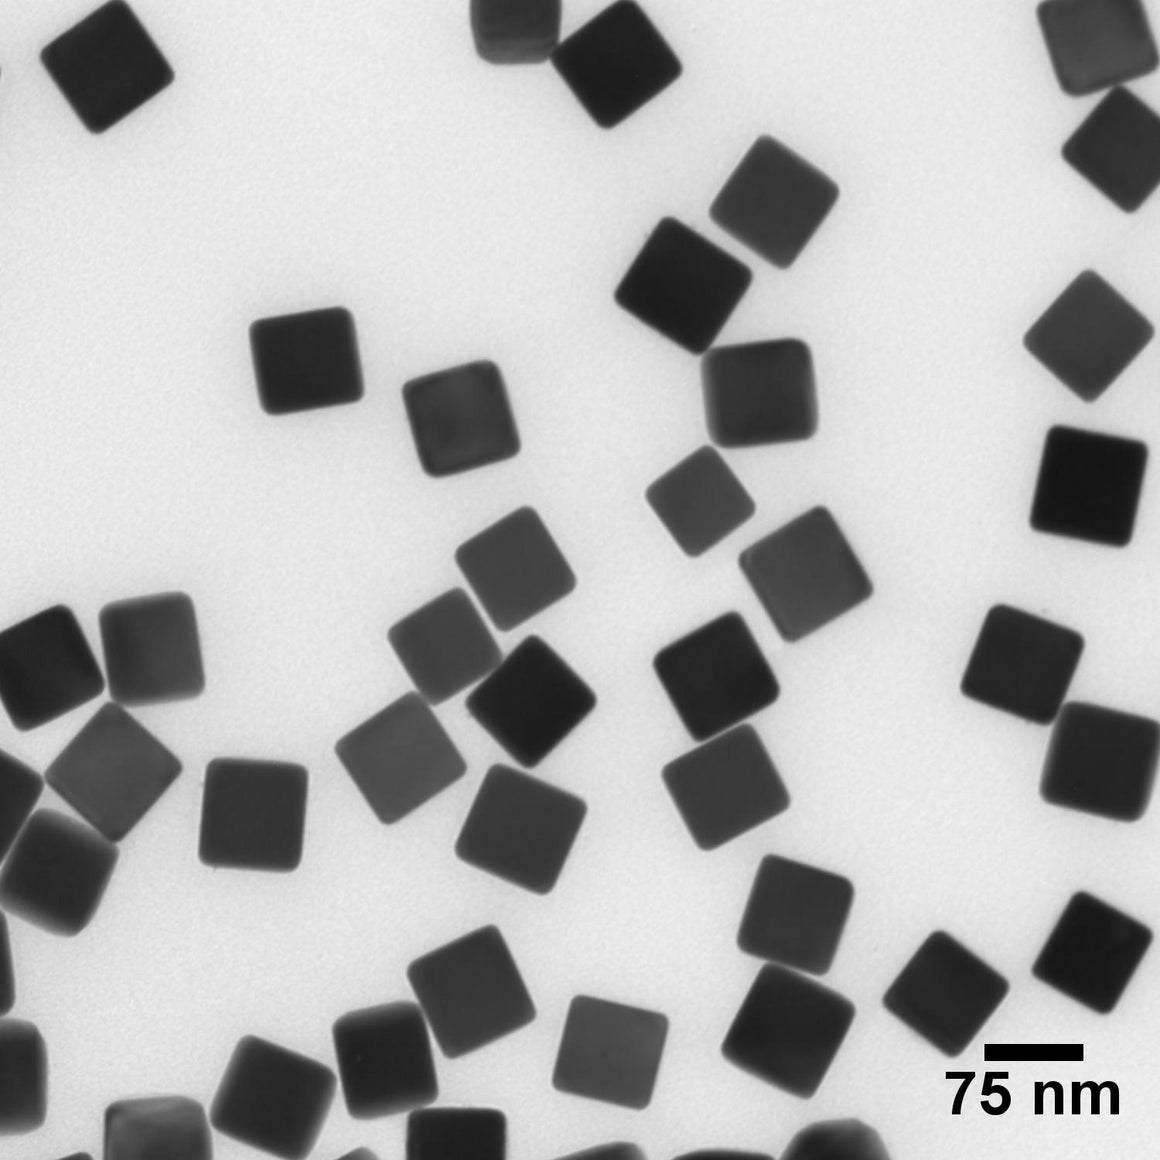 NanoXact Silver Nanocubes – PVP